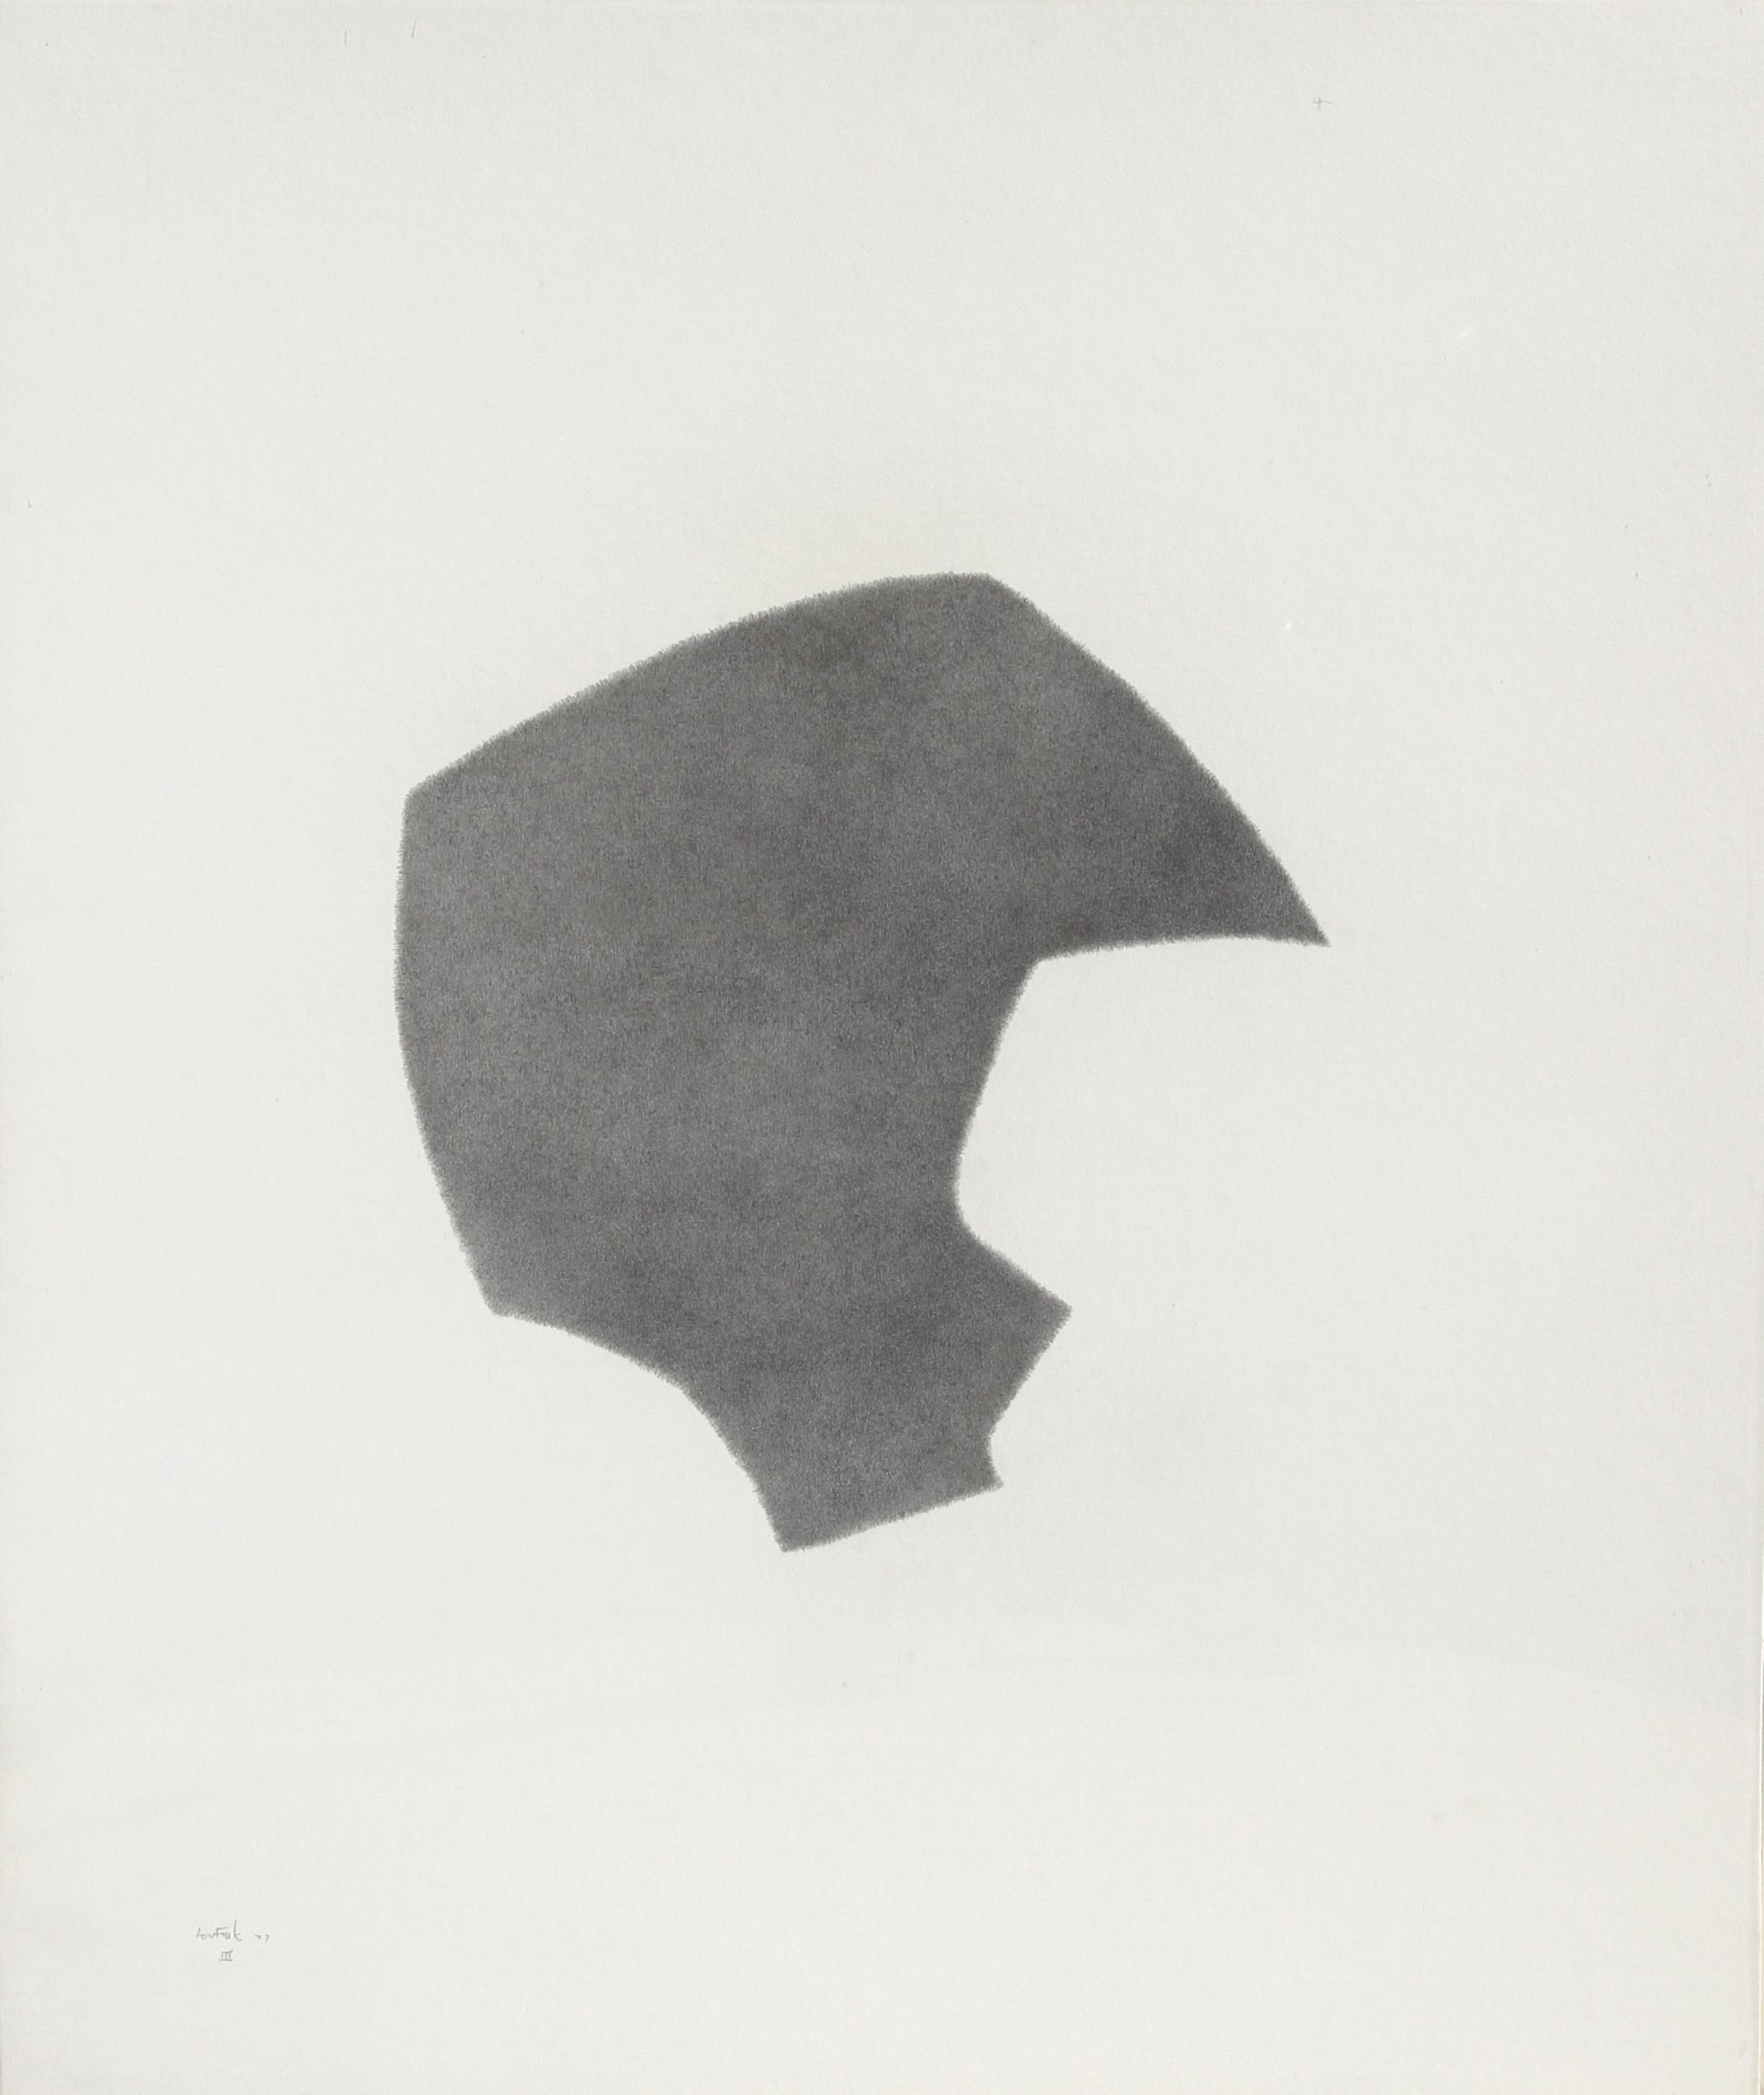 Künstler: Lou Fink, Amerikaner (1925 - 1980)
Titel: Helm #3
Jahr: 1977
Medium: Bleistift auf Papier, signiert und datiert v.l.n.r.
Größe: 24 in. x 20 in. (60,96 cm x 50,8 cm)